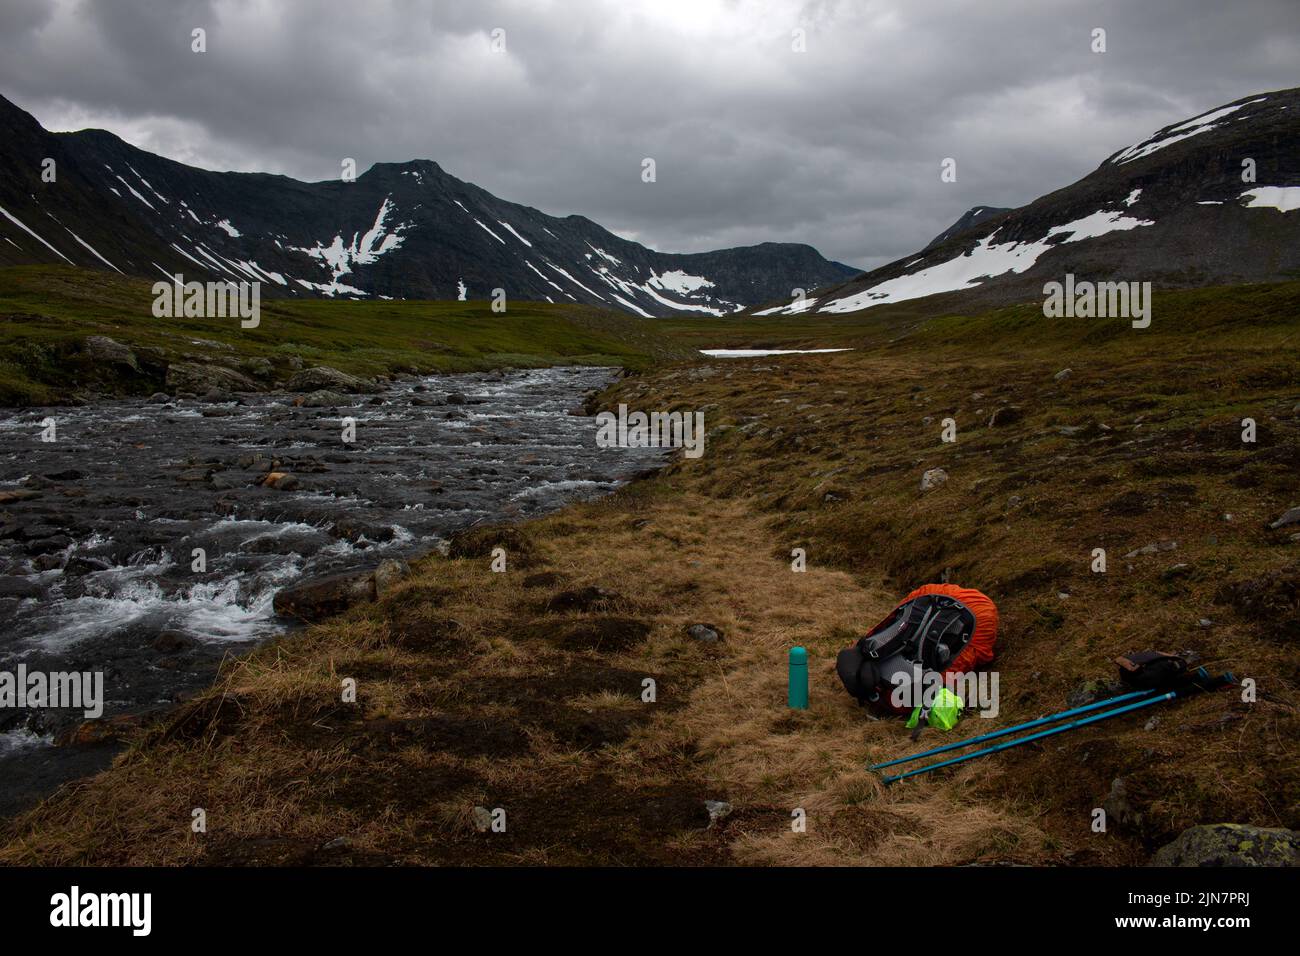 Un sac à dos, des bâtons de randonnée et un thermos à côté d'un ruisseau venant de la neige fondante sur les montagnes Sylarna, en Norvège Banque D'Images